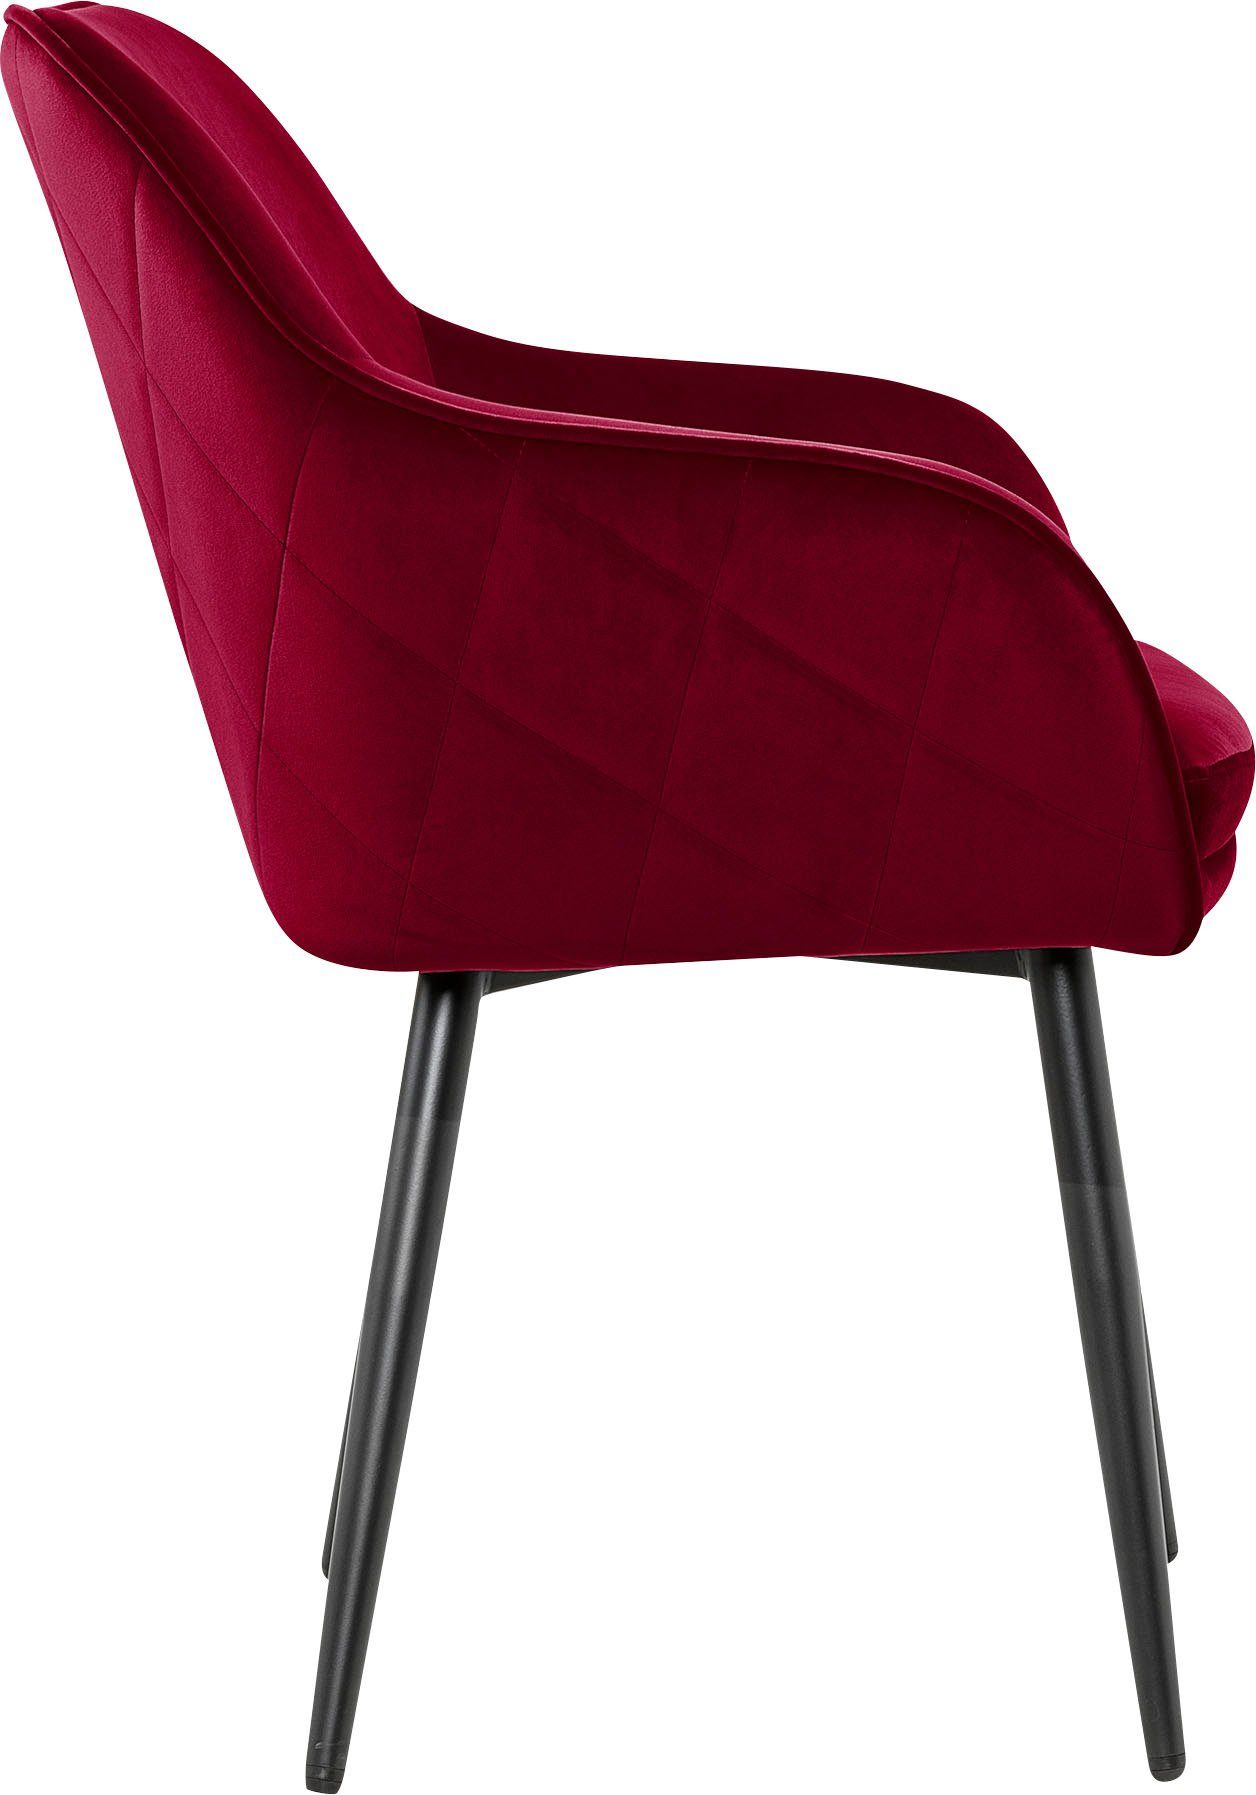 SalesFever Armlehnstuhl, mit Diamantsteppung auf Rot/Schwarz der Rückseite